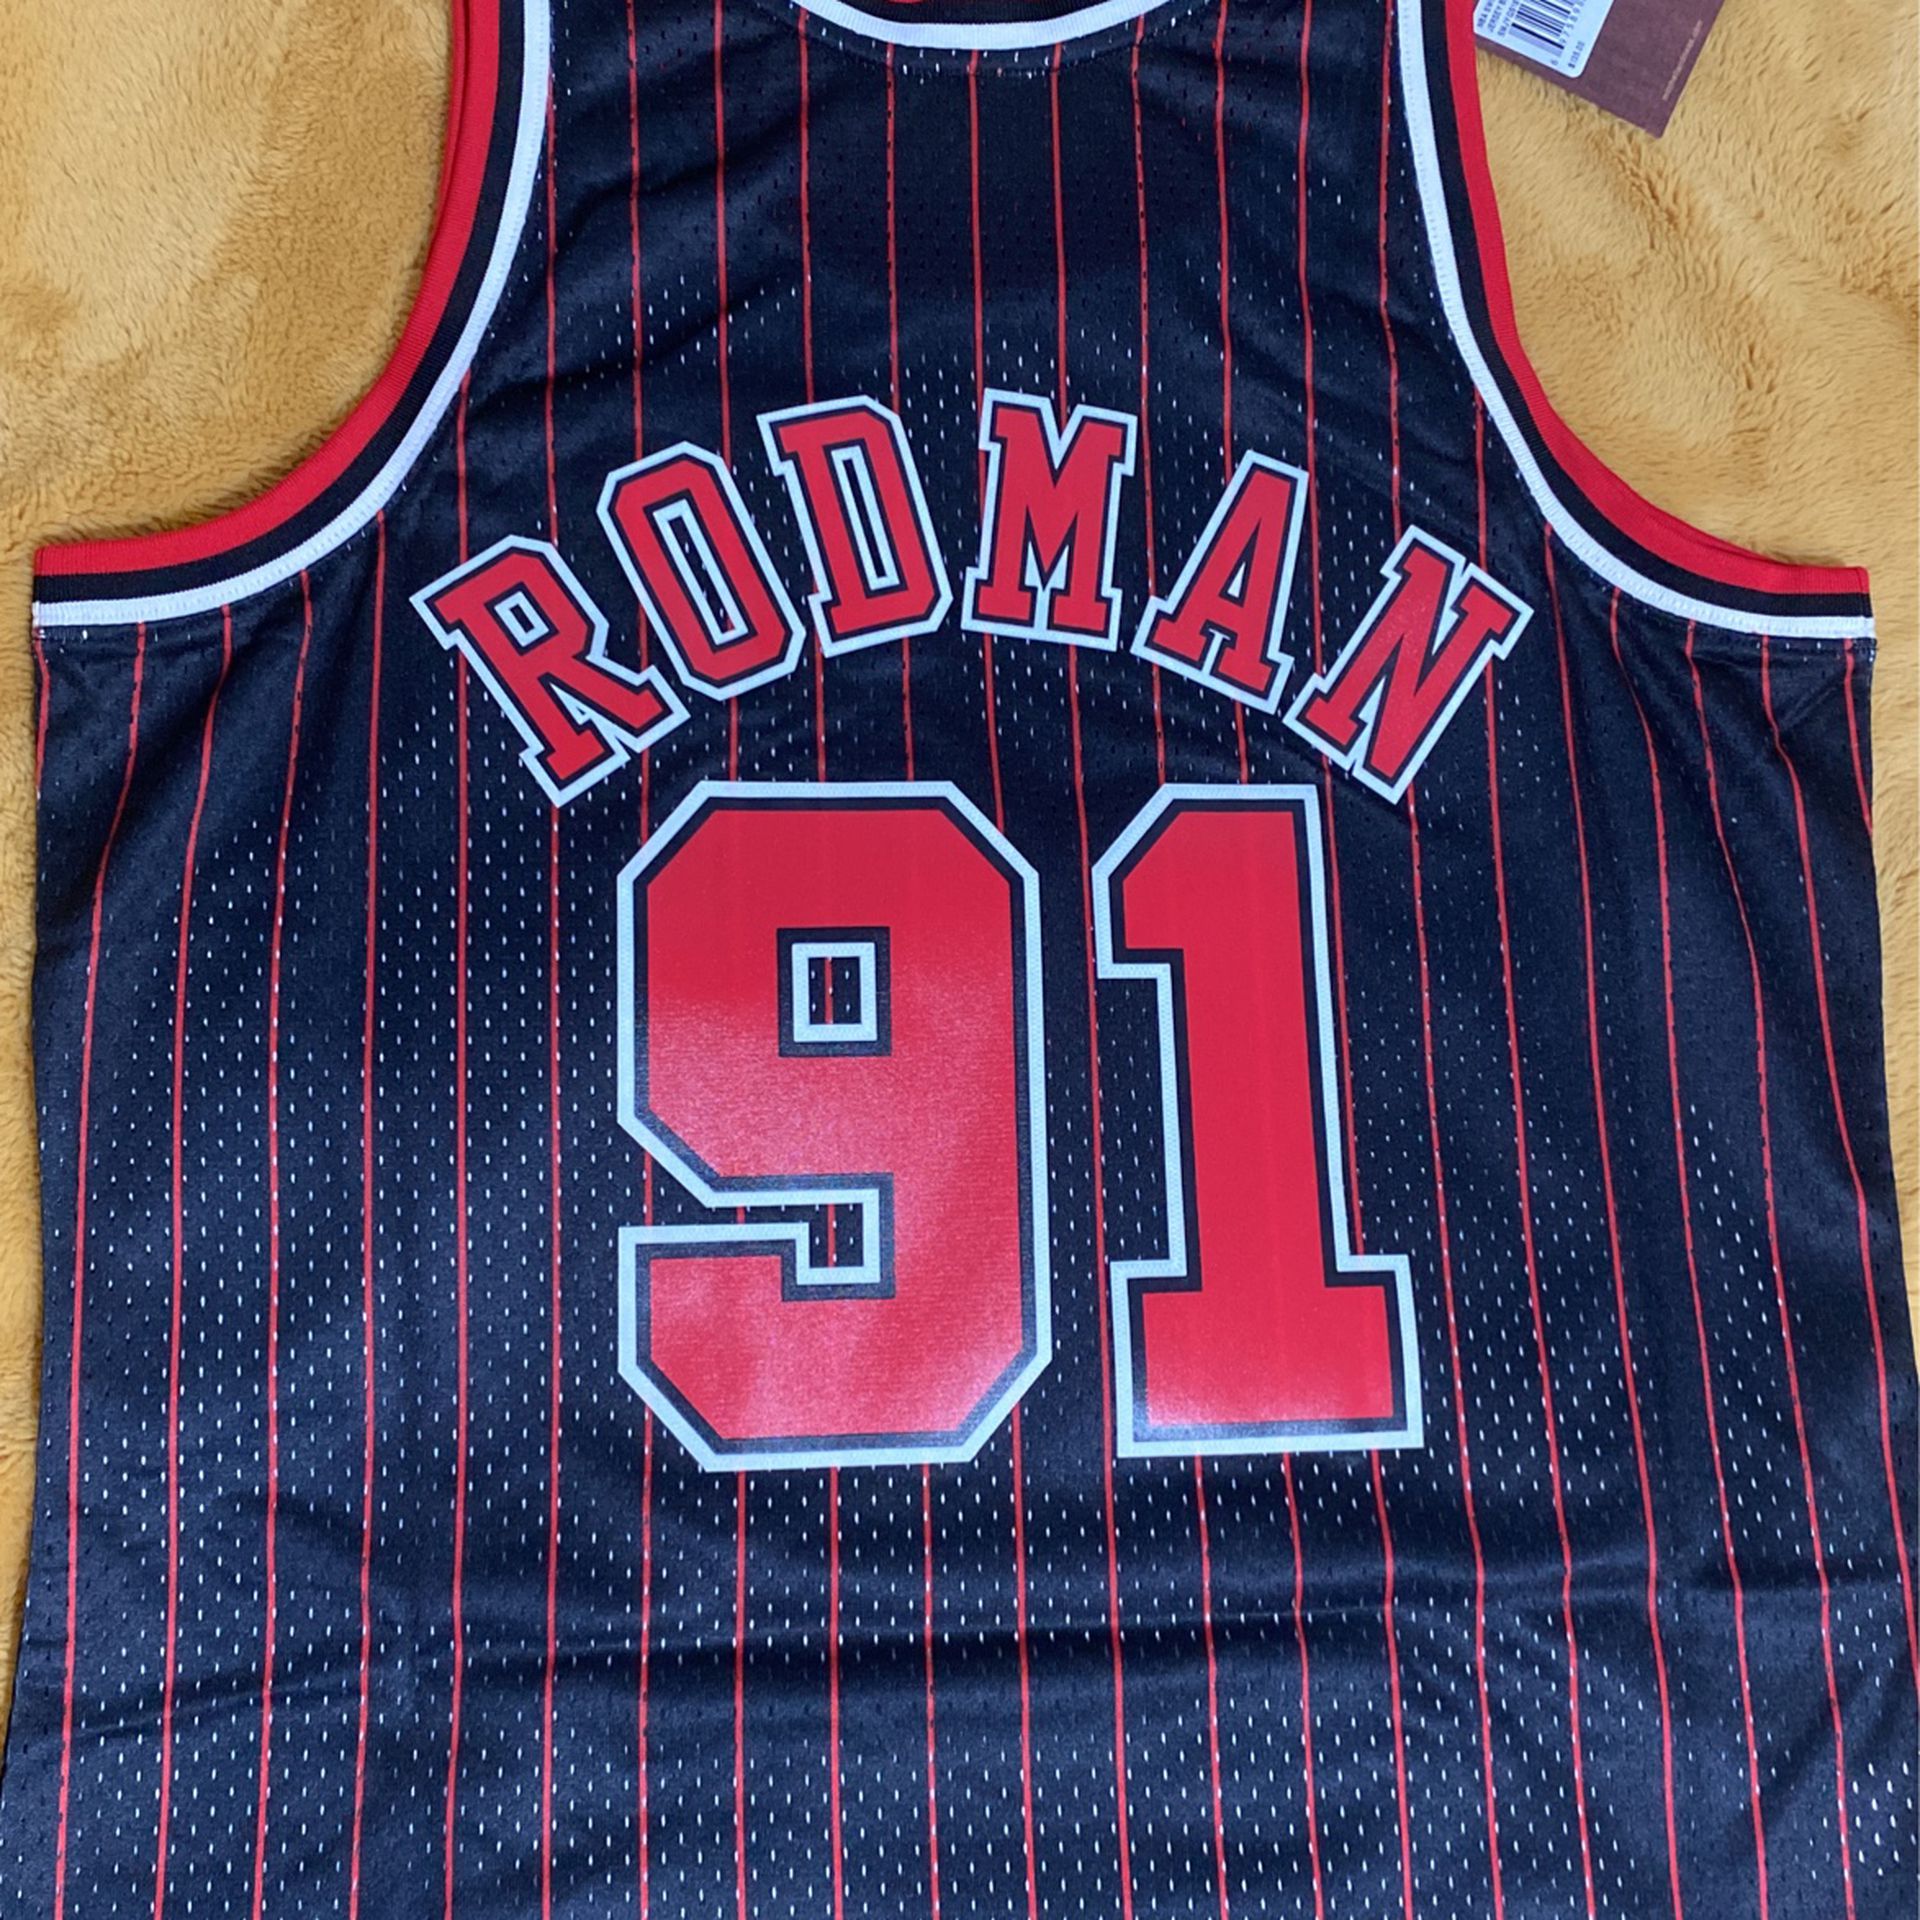 Chicago bulls Dennis Rodman jersey for Sale in Schiller Park, IL - OfferUp